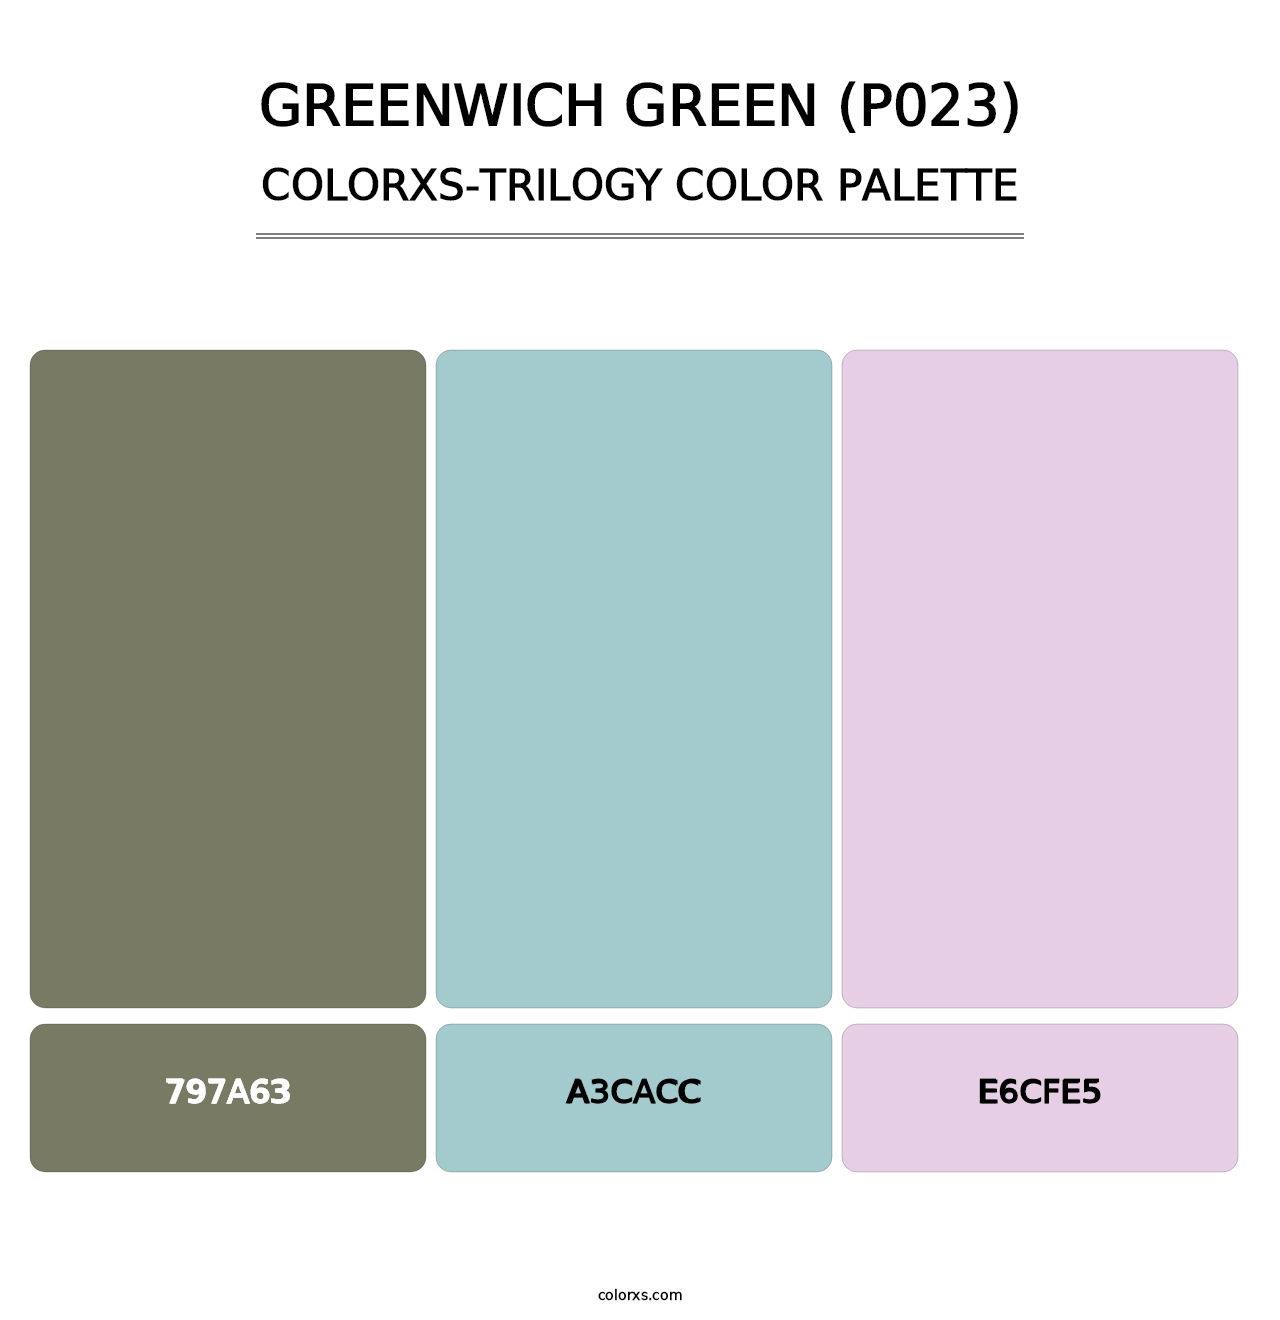 Greenwich Green (P023) - Colorxs Trilogy Palette